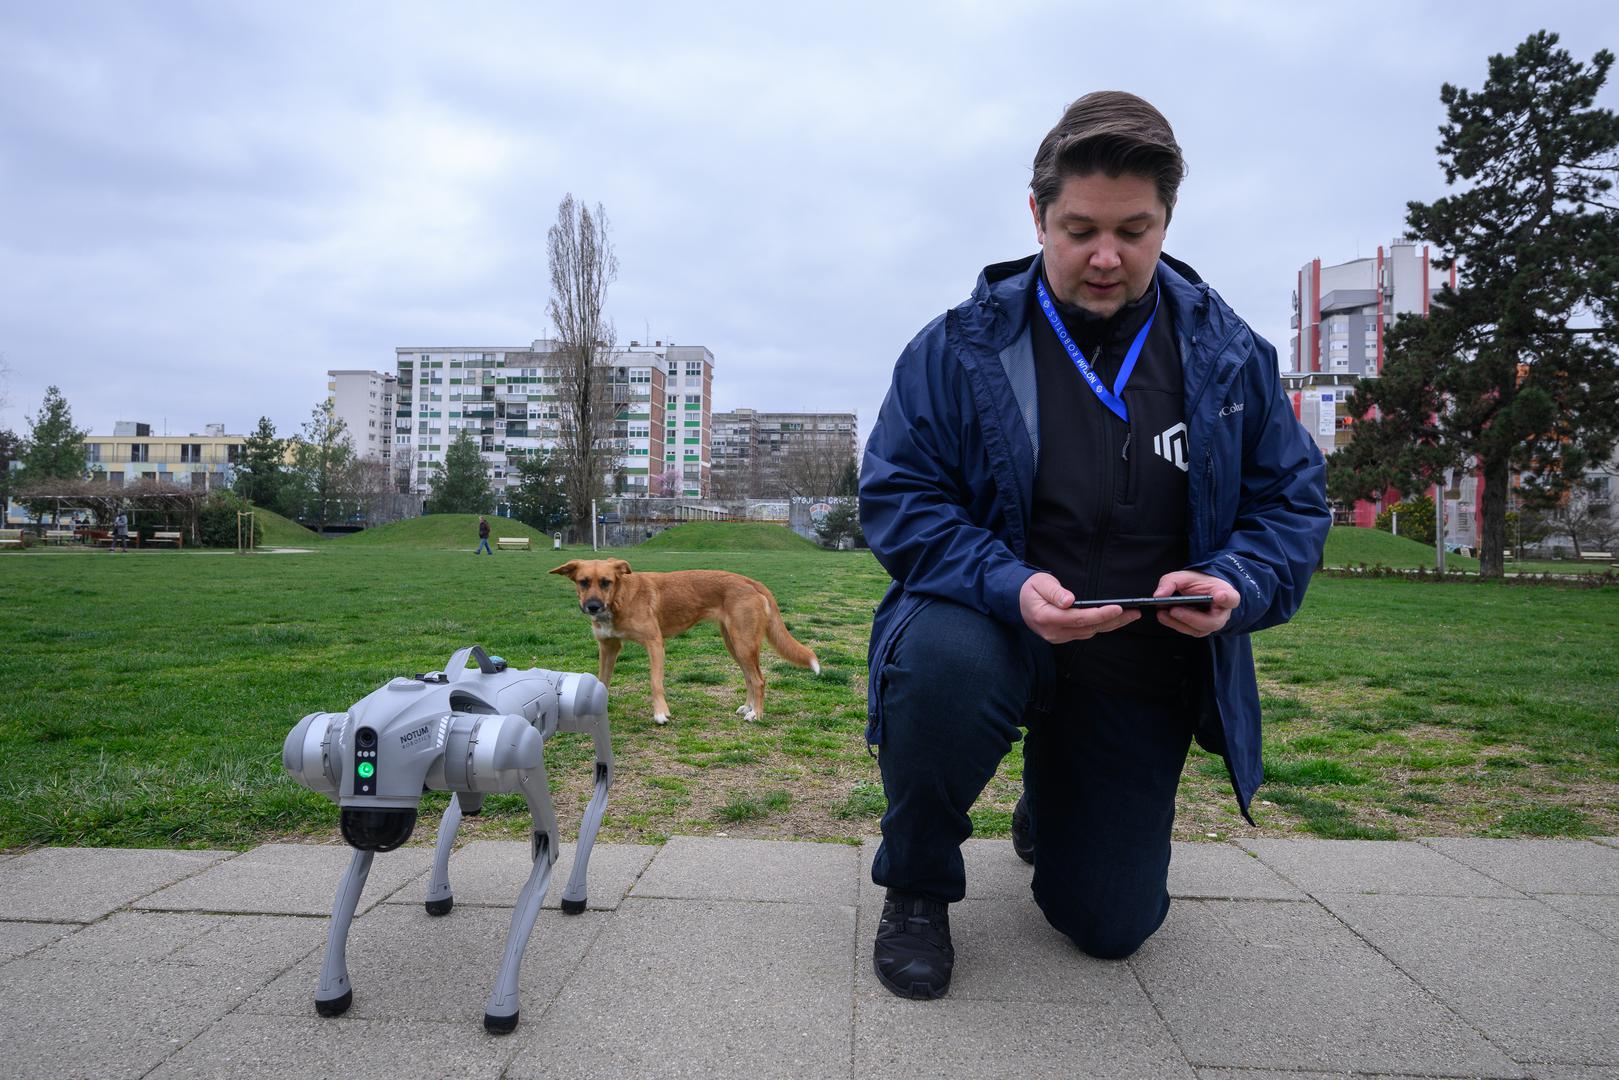 07.03.2024., Velika Gorica -  Milan Rajcevic, vlasnik i direktor tvrtke Notum Robotics sa suradnikom Ivanom Batinicem prosetao je Parkom dr. Franje Tudjmana u velikoj Gorici u drustvu robota psa. Za robota su podjednako bili zainteresirani prolaznici i njihovi ljubimci psi. Robot pas je komercijalni proizvod koji se radi po narudjbi, a ono sto je kod njega interesantno i unikatno su softverska rijesenja. Poanta je da ta platforma bude autonomna, bez ljudske intervencije i sa minimalnim odrzavanjem izvrsava zadatke prema svojem programu, da se snalazi u nepoznatim okolnostima, po nepoznatom terenu. Primjene su neogranicene, od sigurnosnih primjena, sluzbe spasavanja, nadzora te interakcije i edukacije. Puni se do 24 sata zbog tehnologije baterije i moze raditi do 3 sata, a trcati moze brzinom do 20 km/h. Trenutno nije vodootporan ali s vremenom moze postati i vodootporan i vatrootporan za siri spektar primjena. Milan Rajcevic.
 Photo: Davor Puklavec/PIXSELL